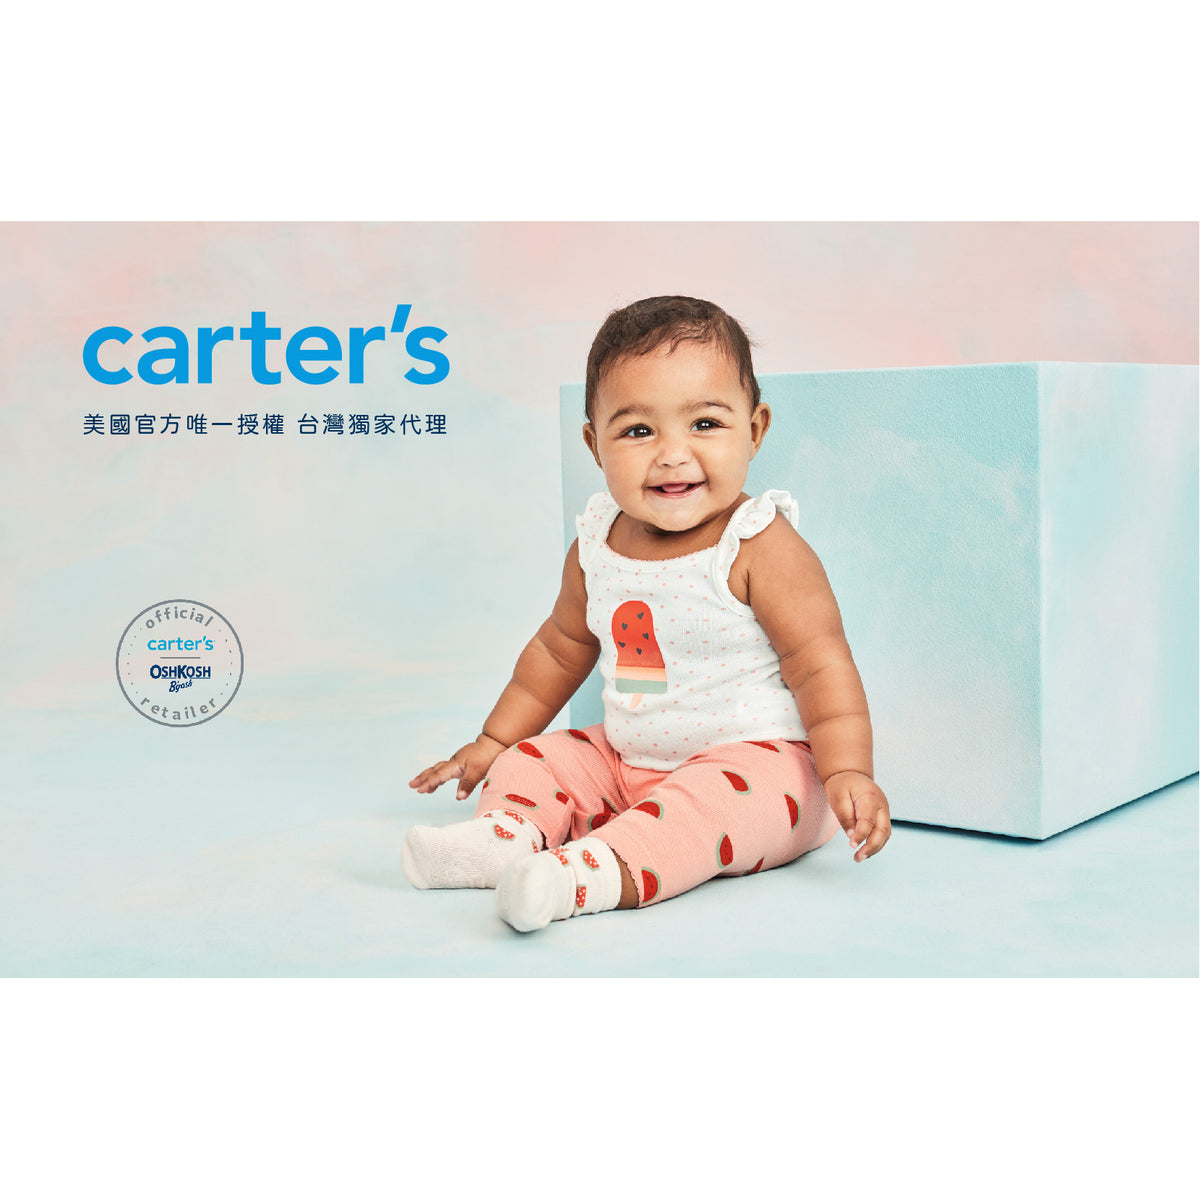 Carter's 彩紅寶寶包屁衣(6M-24M)